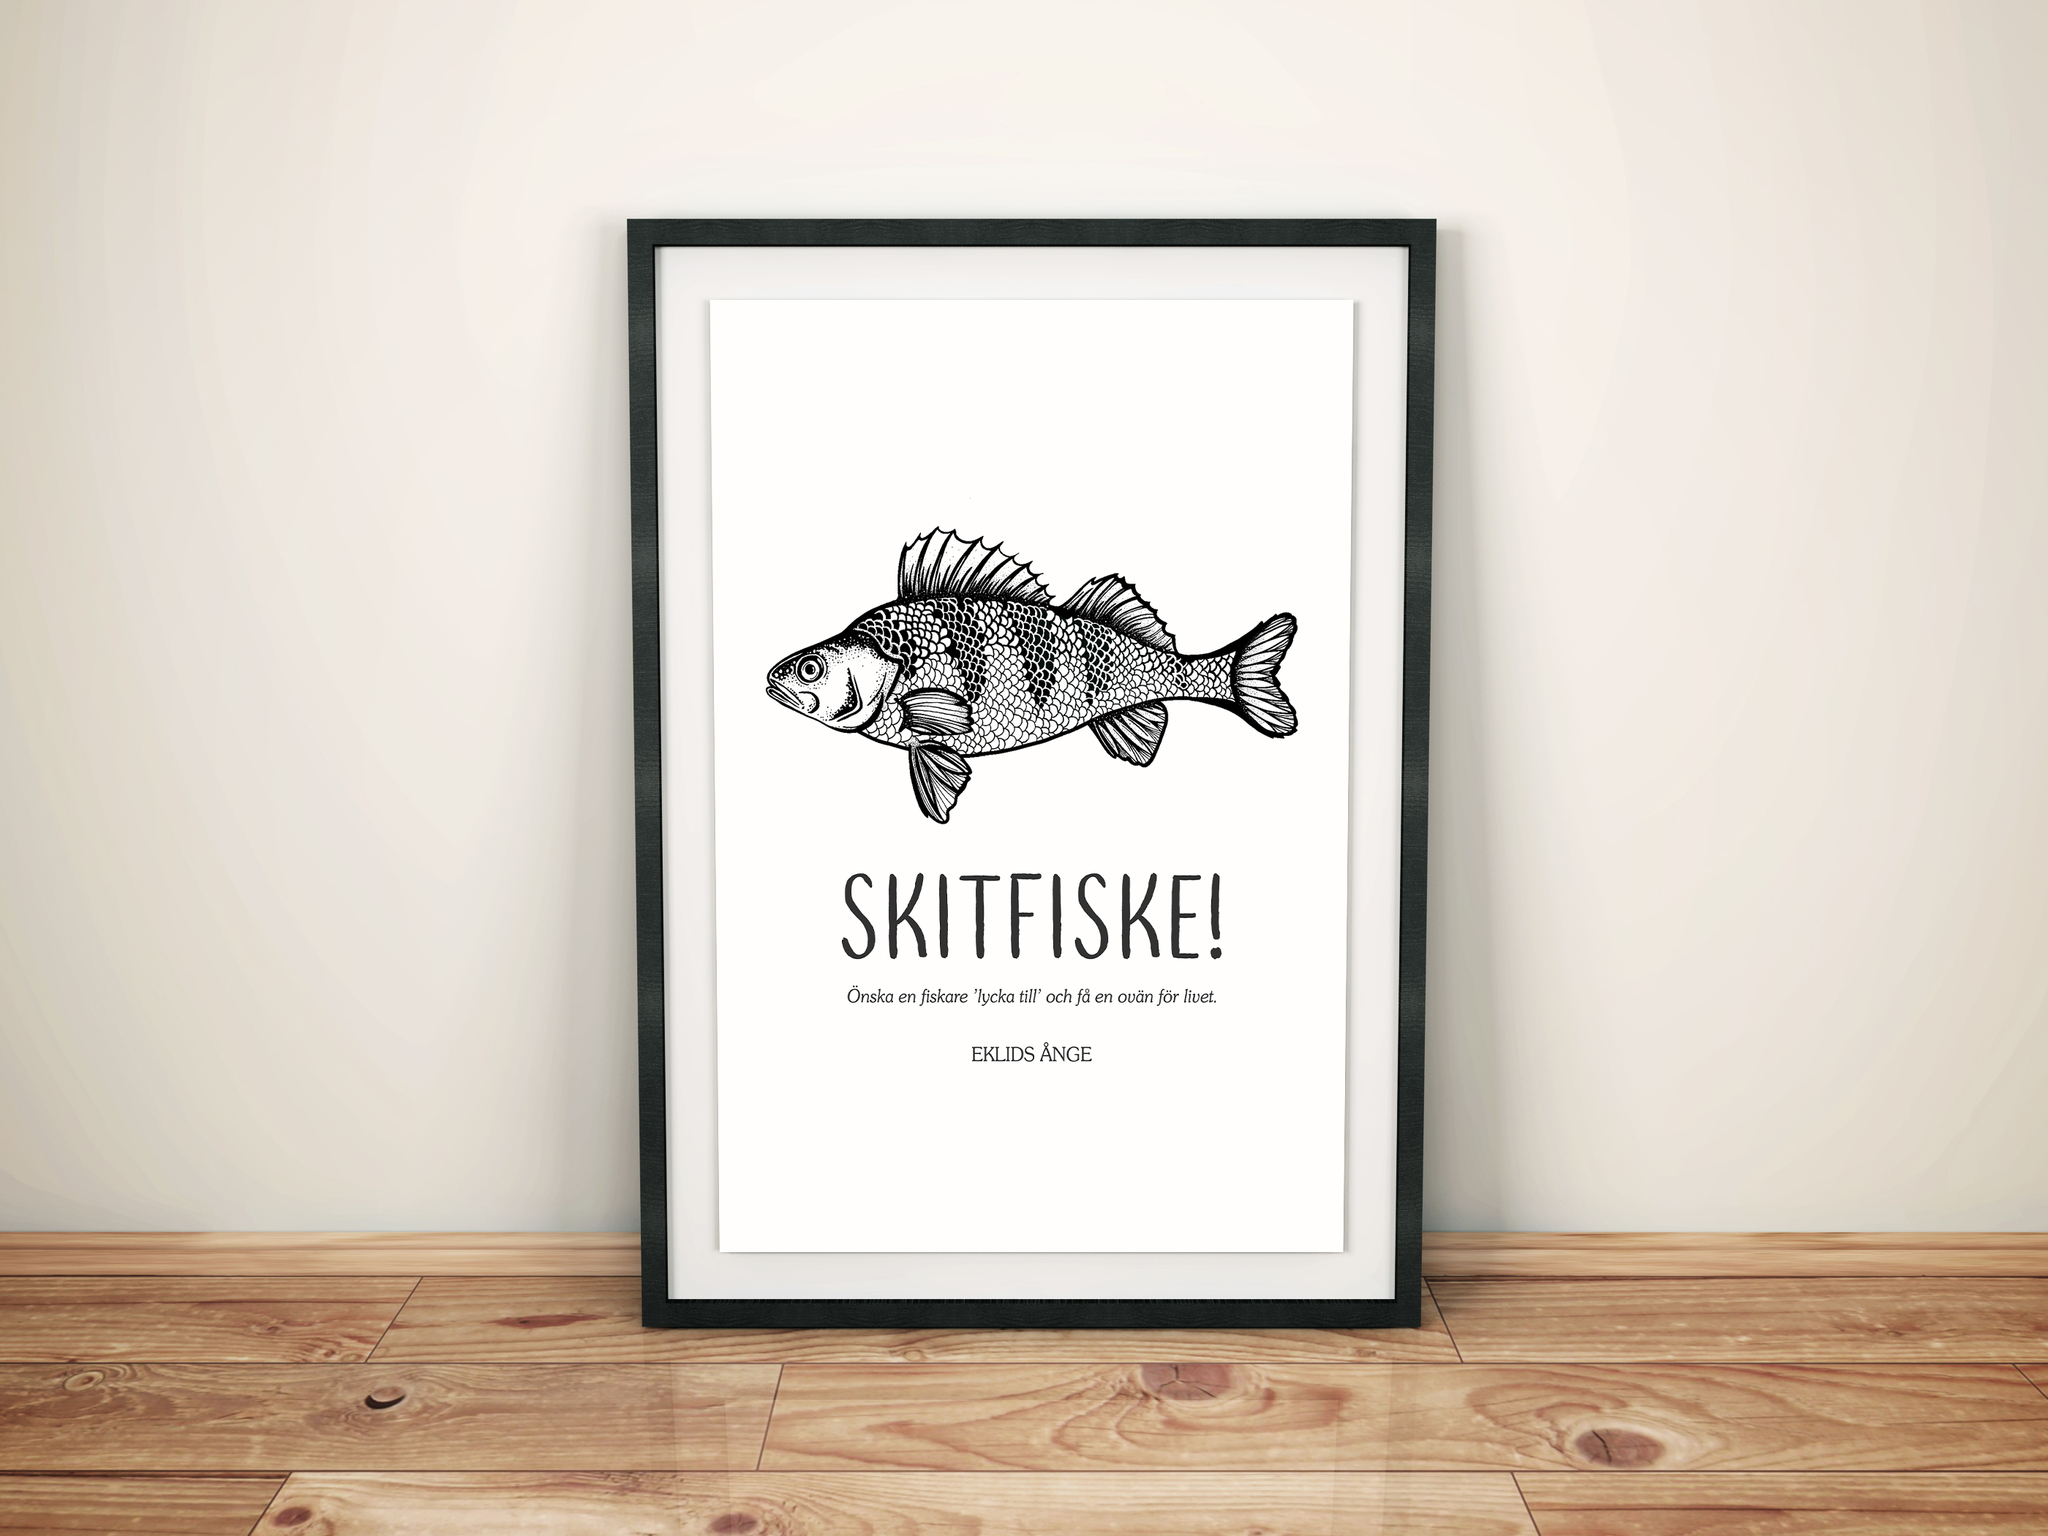 EKLIDS poster: "Skitfiske!"